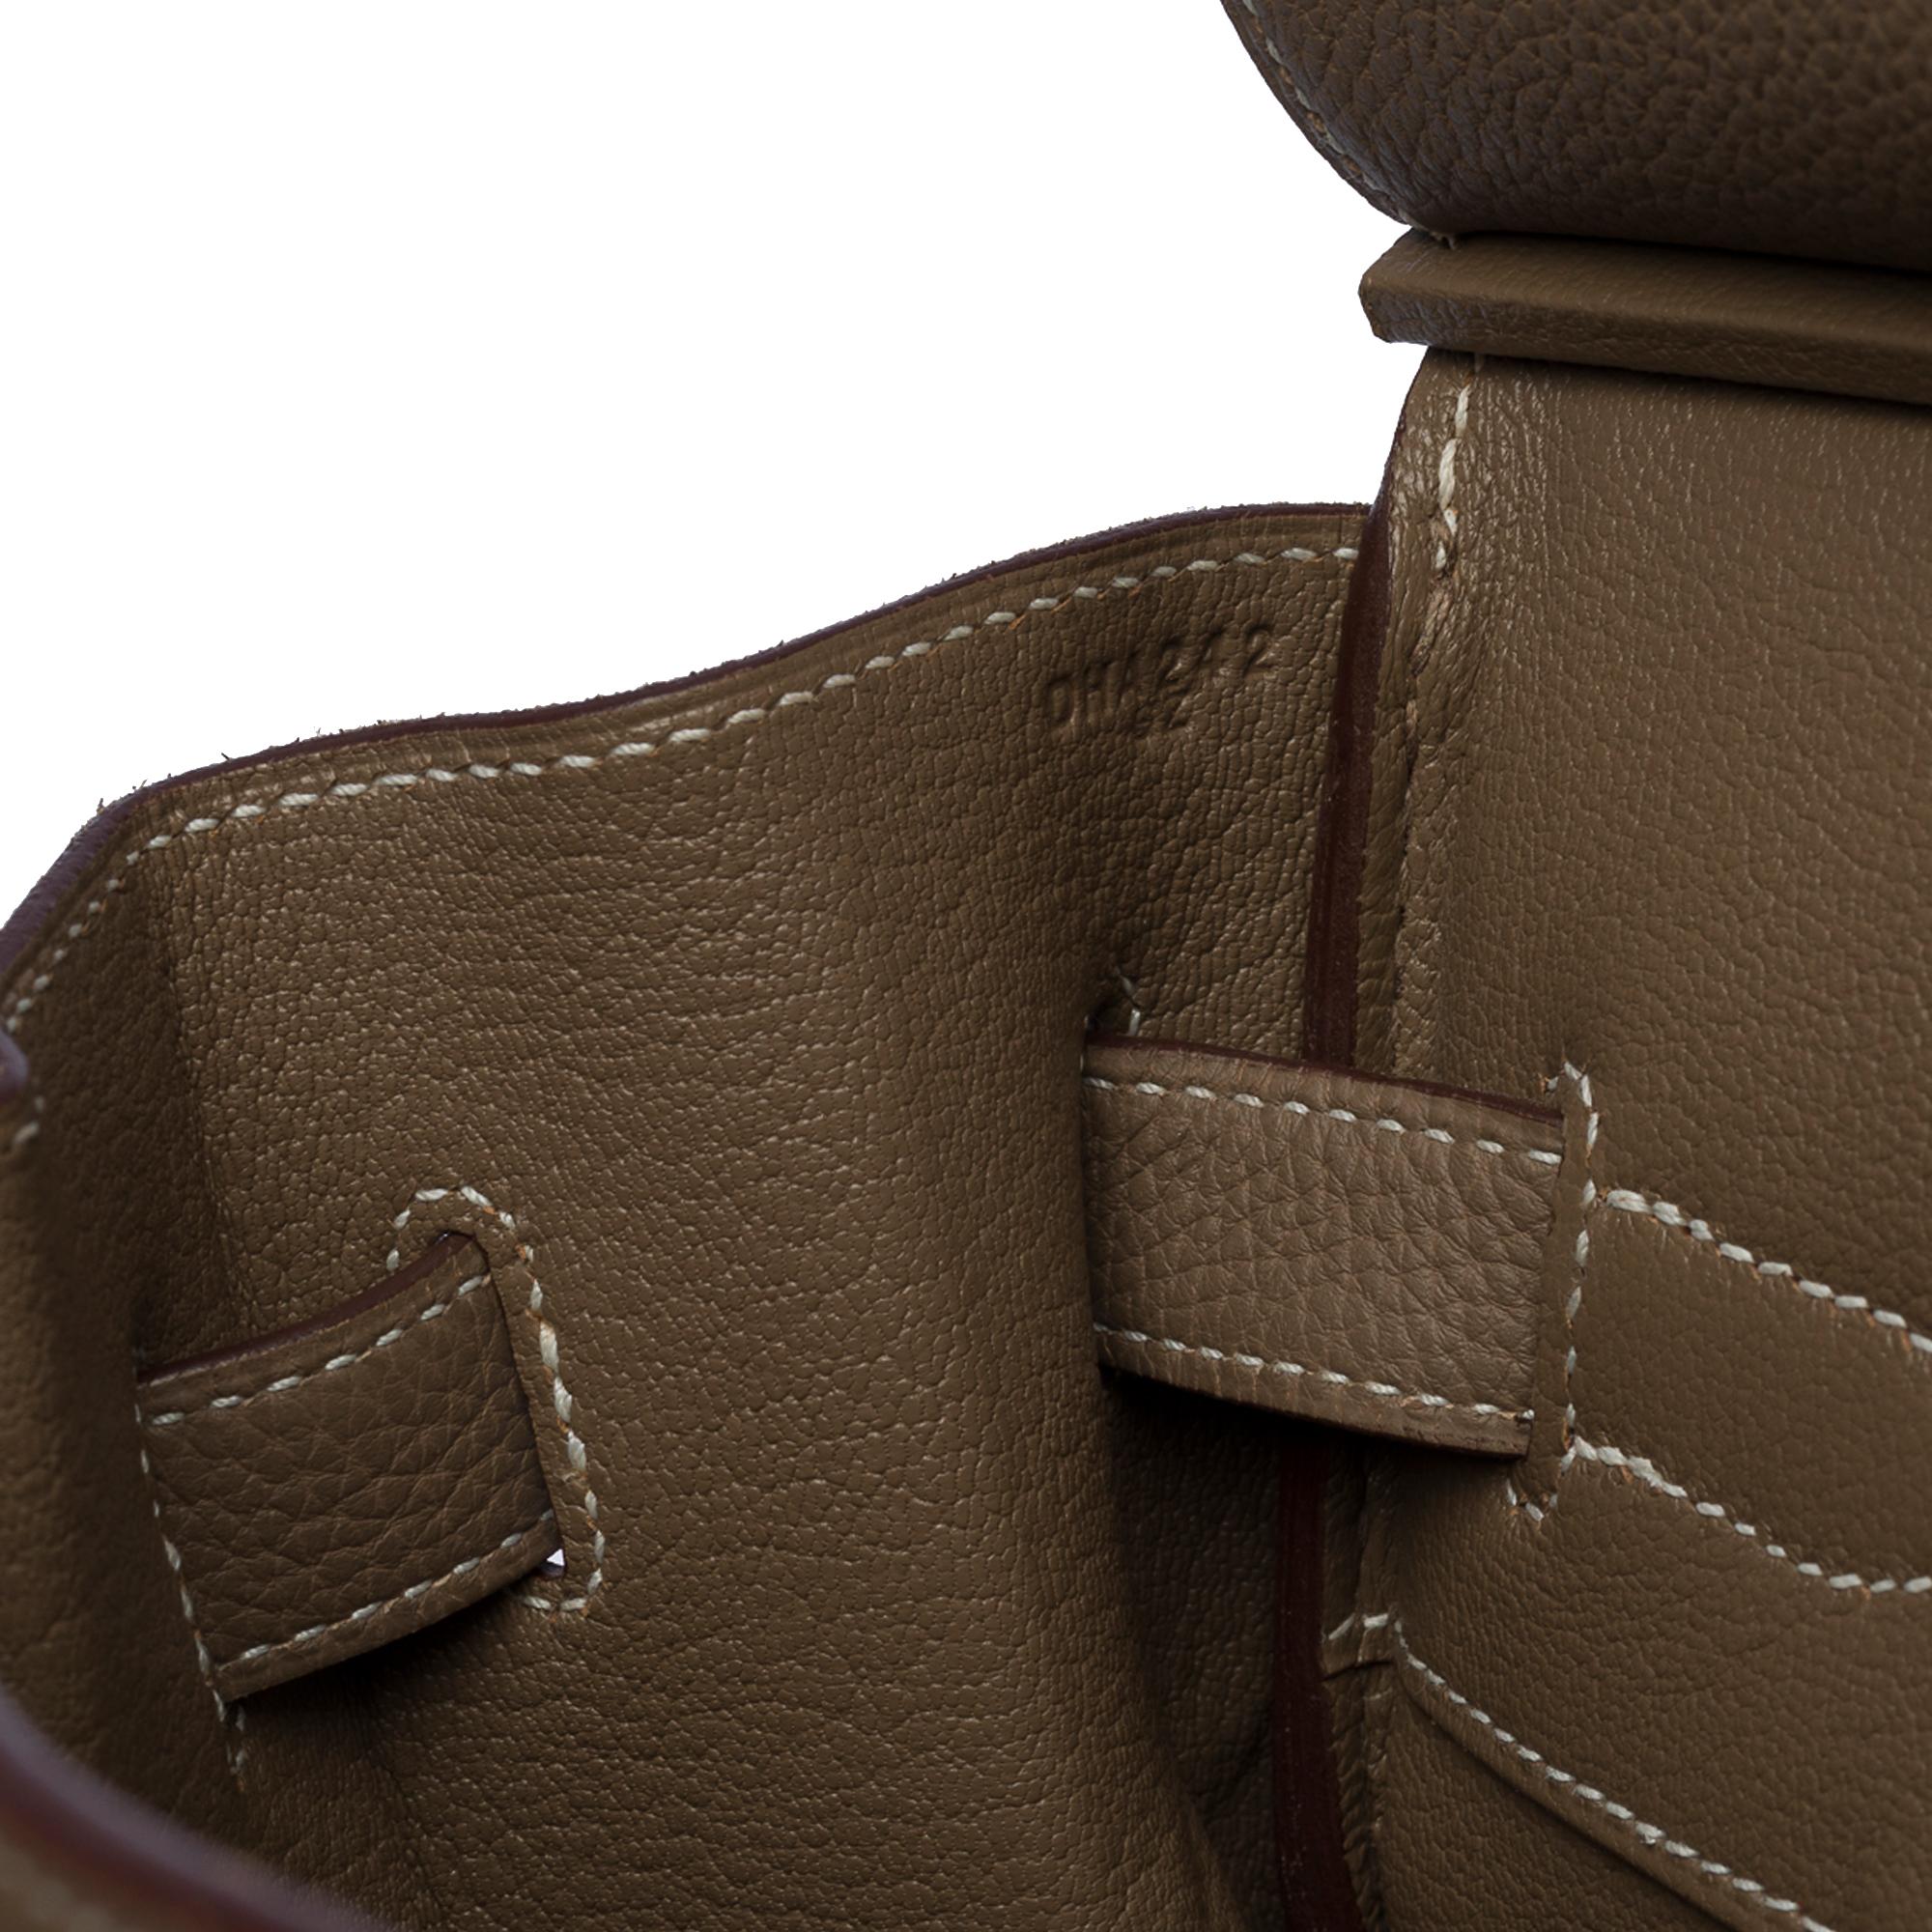 Stunning Hermès Birkin 35 handbag in étoupe Togo leather, SHW In Excellent Condition In Paris, IDF